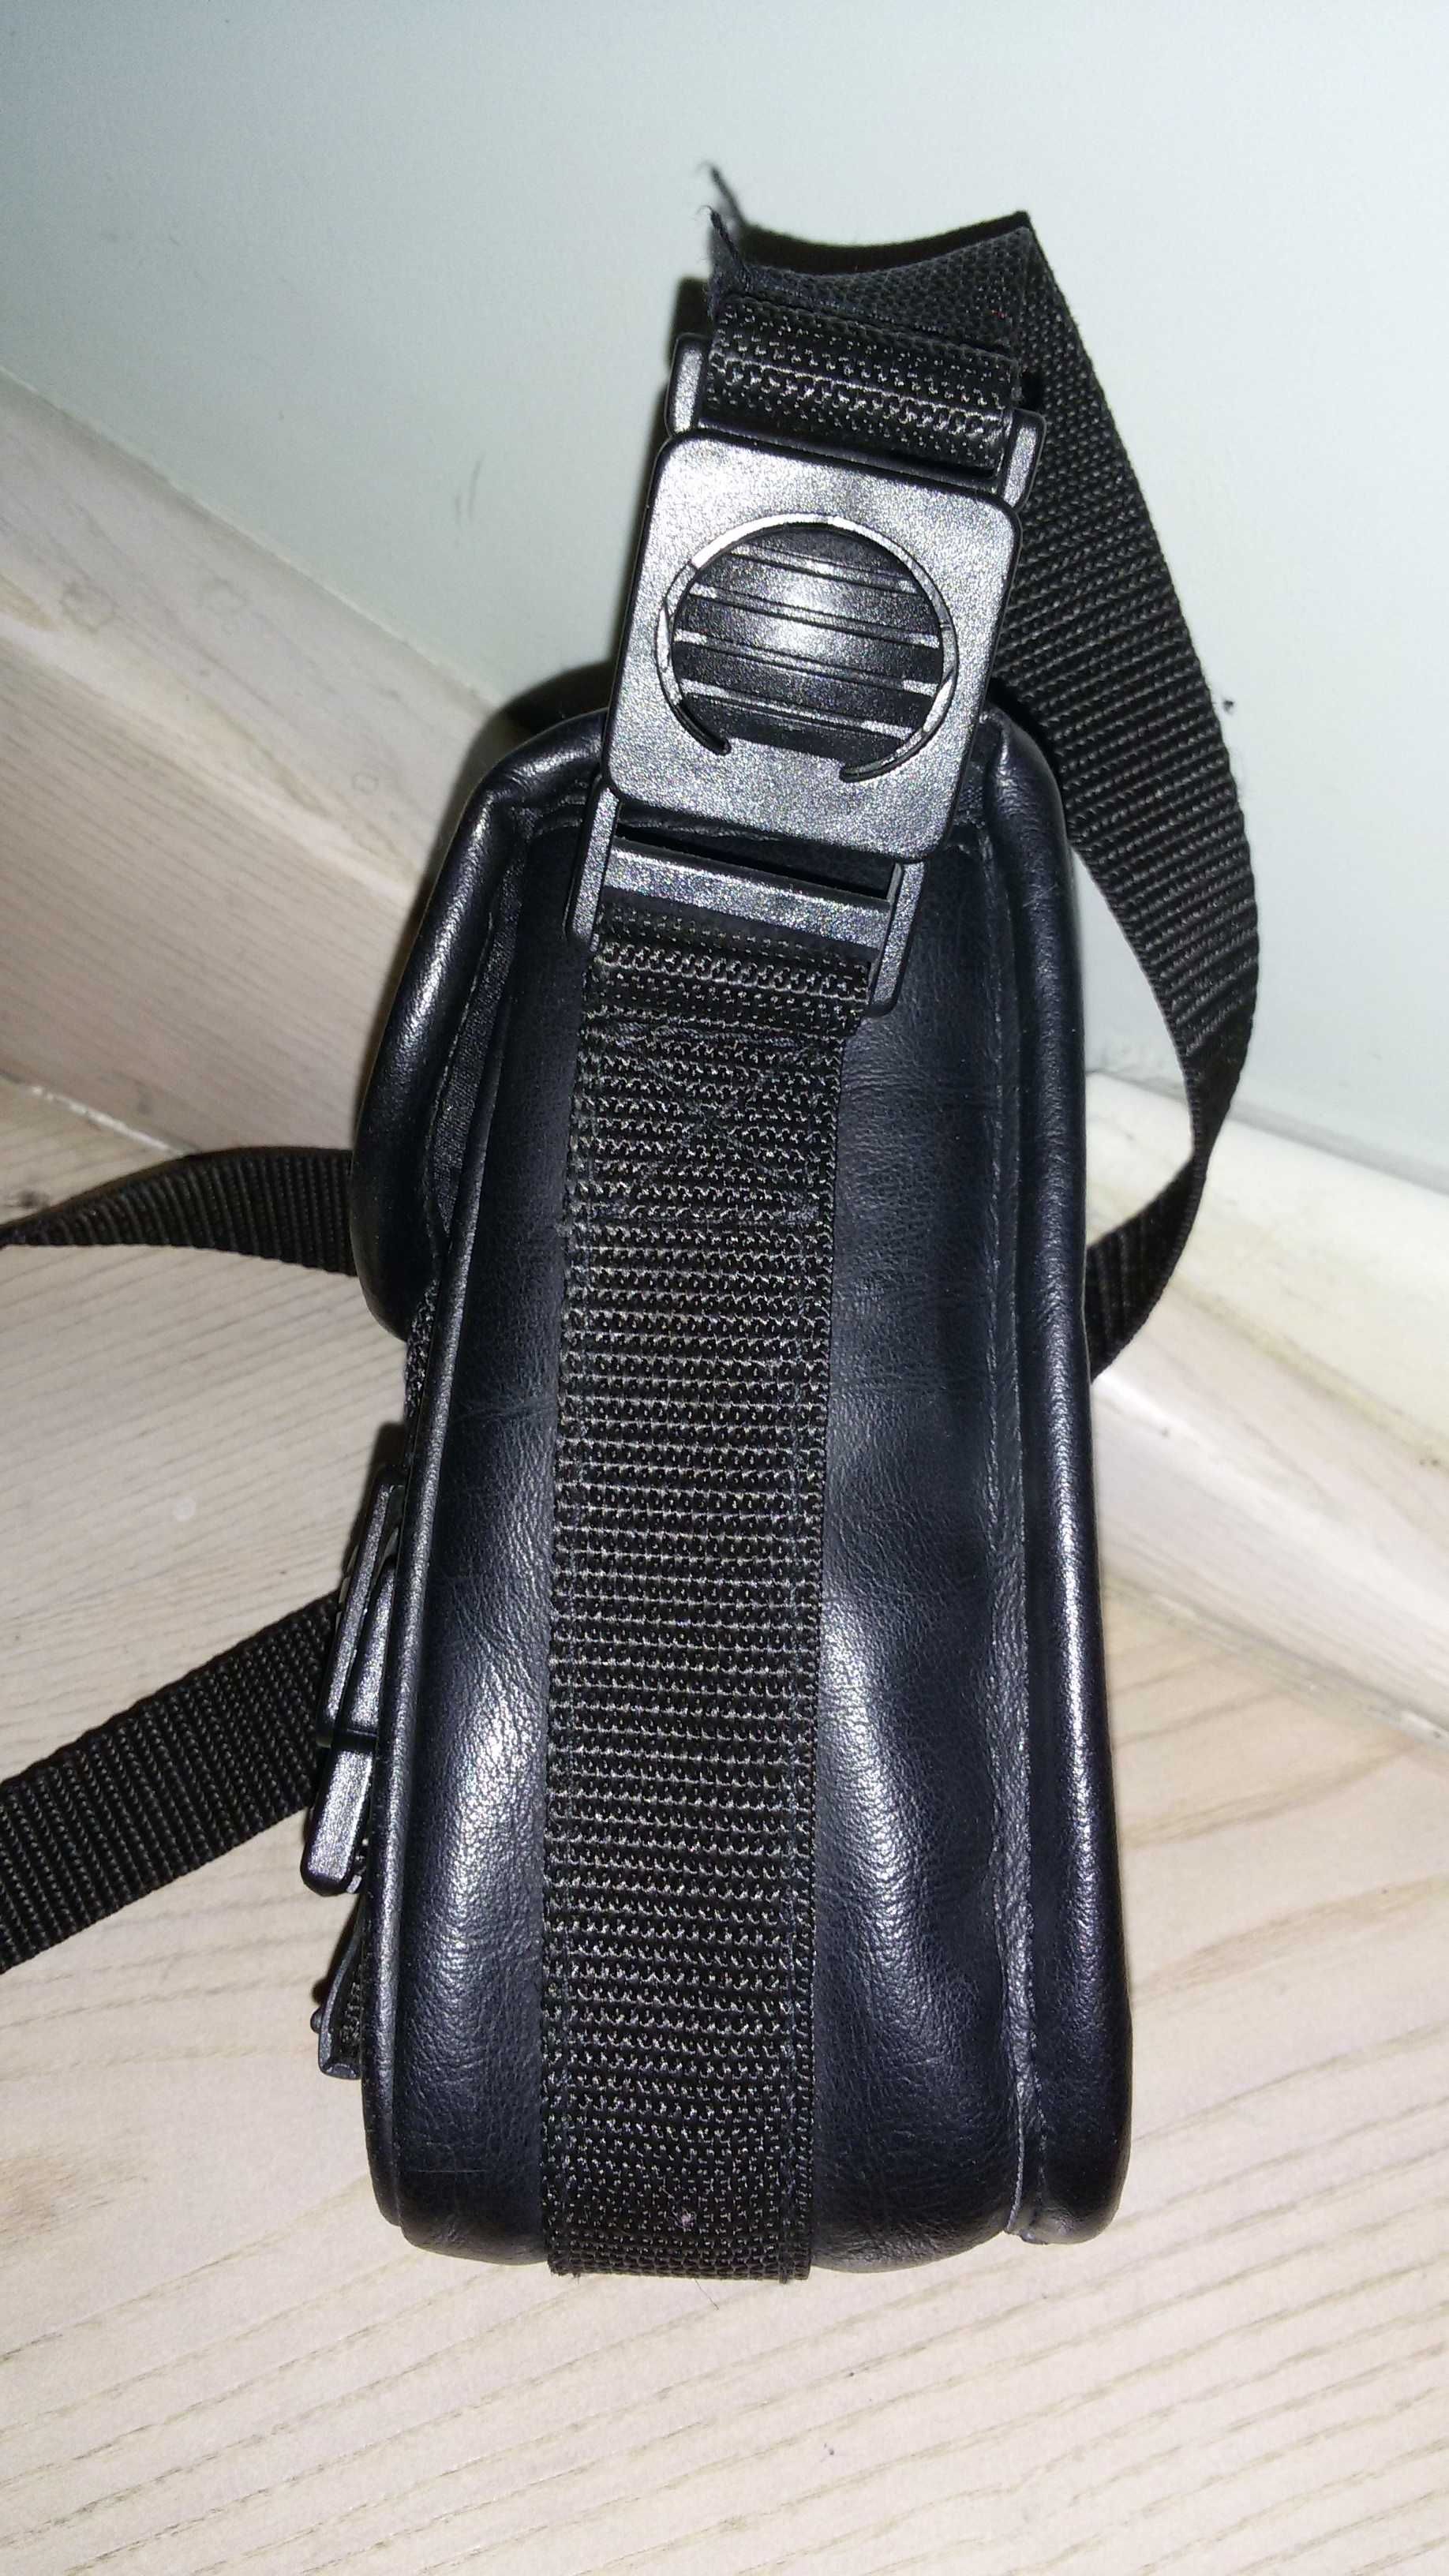 Професійна війскова сумочка  Vanguard (США) для фото видеоапаратури